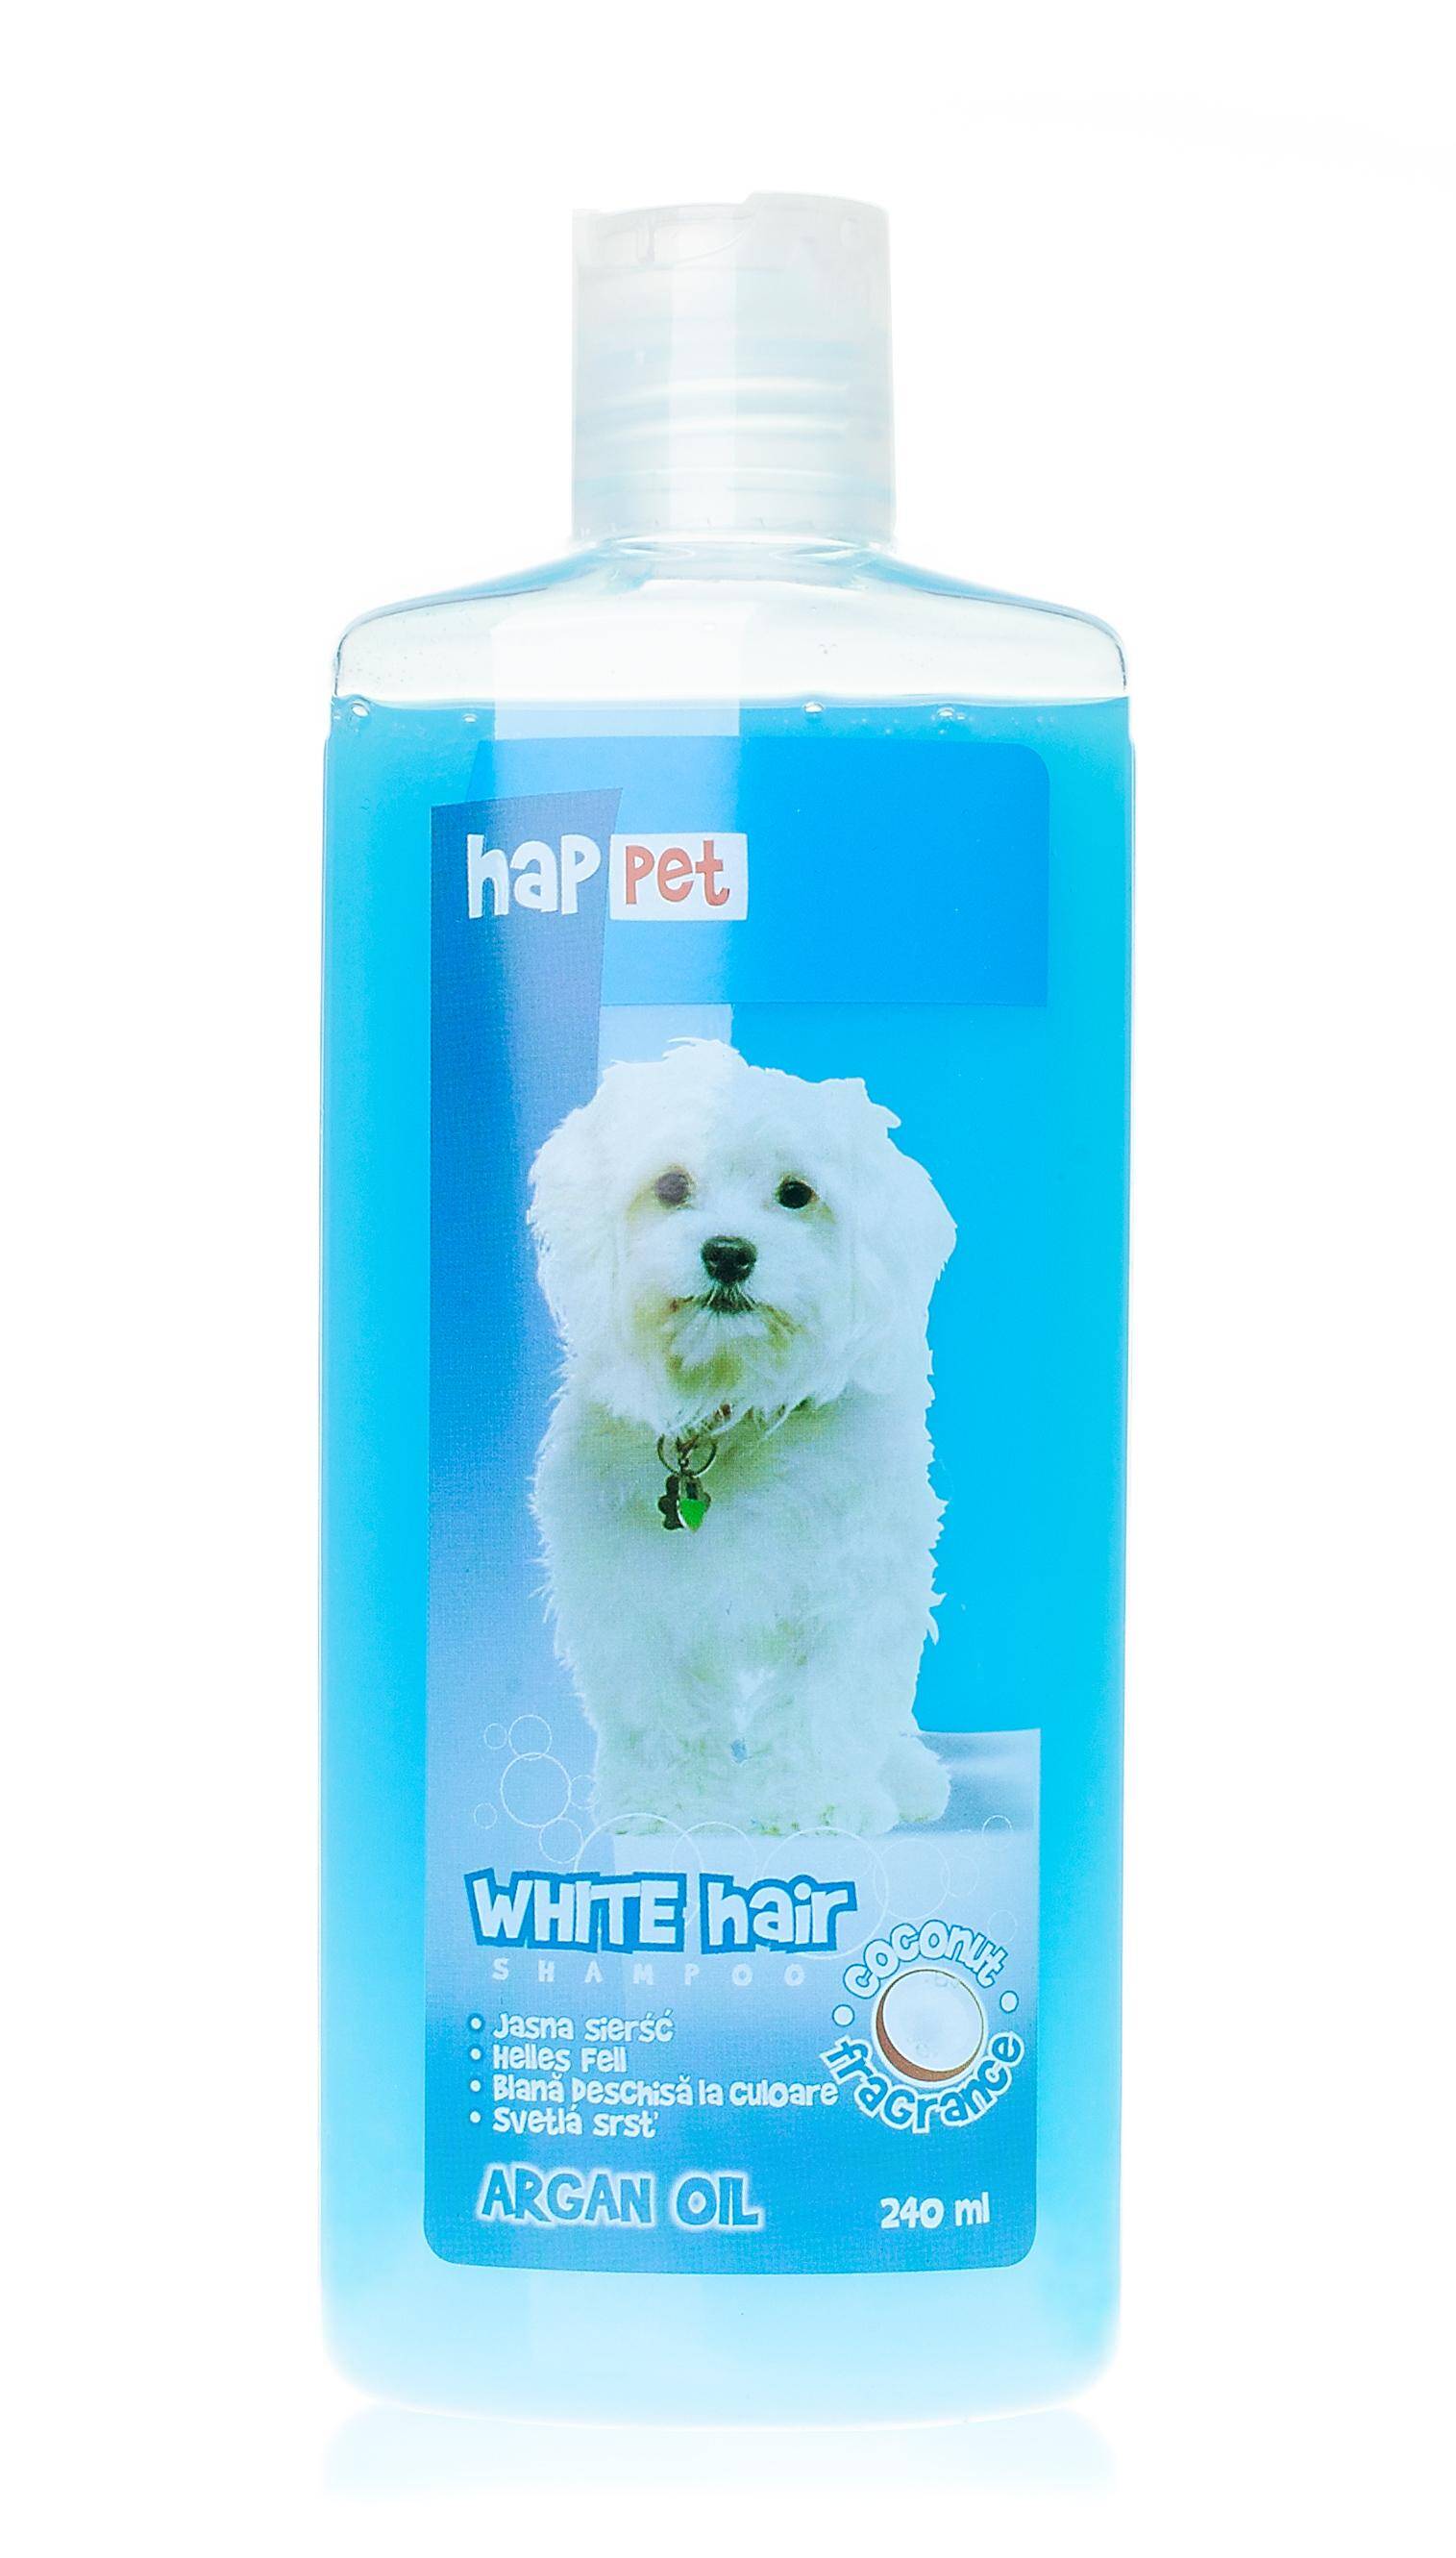 szampon dla psów pekinczyków